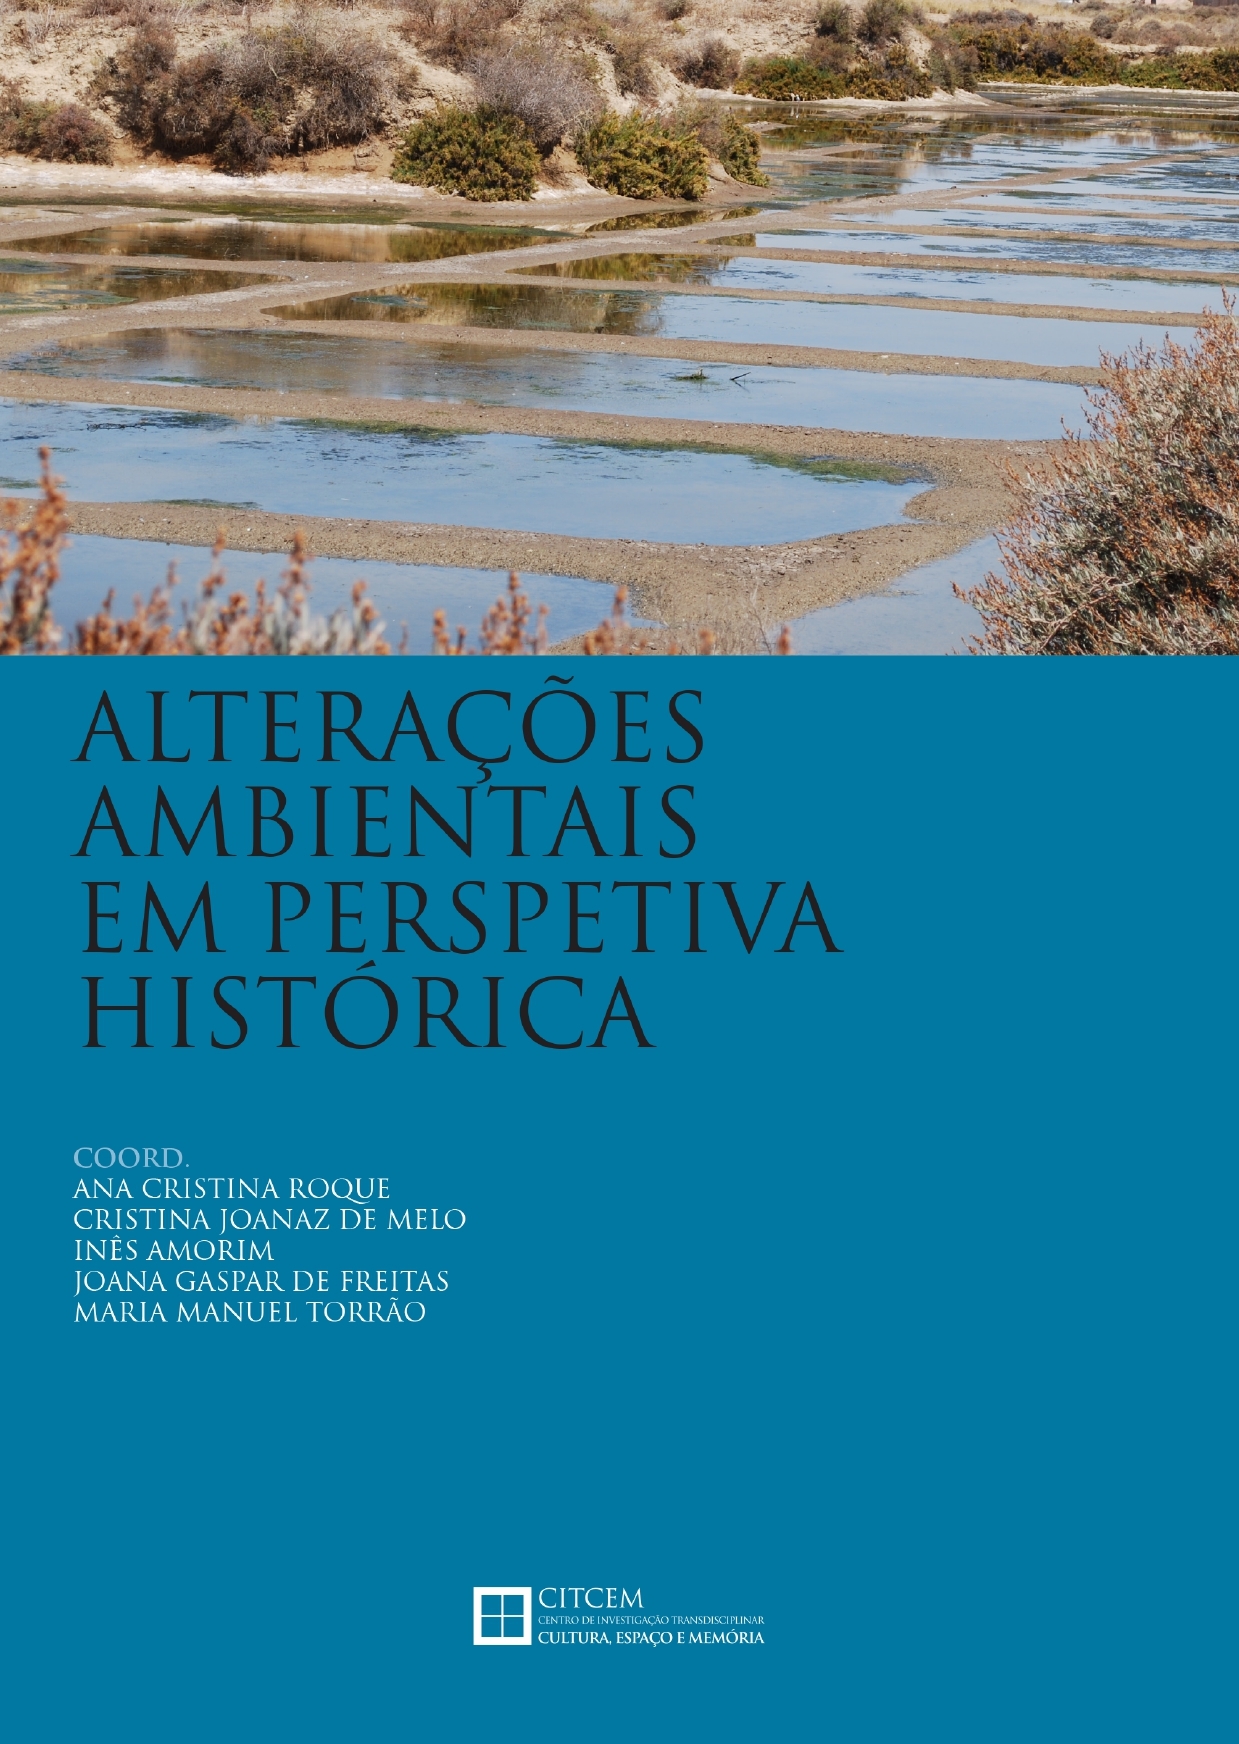 Imagen de portada del libro Alterações Ambientais em Perspetiva Histórica